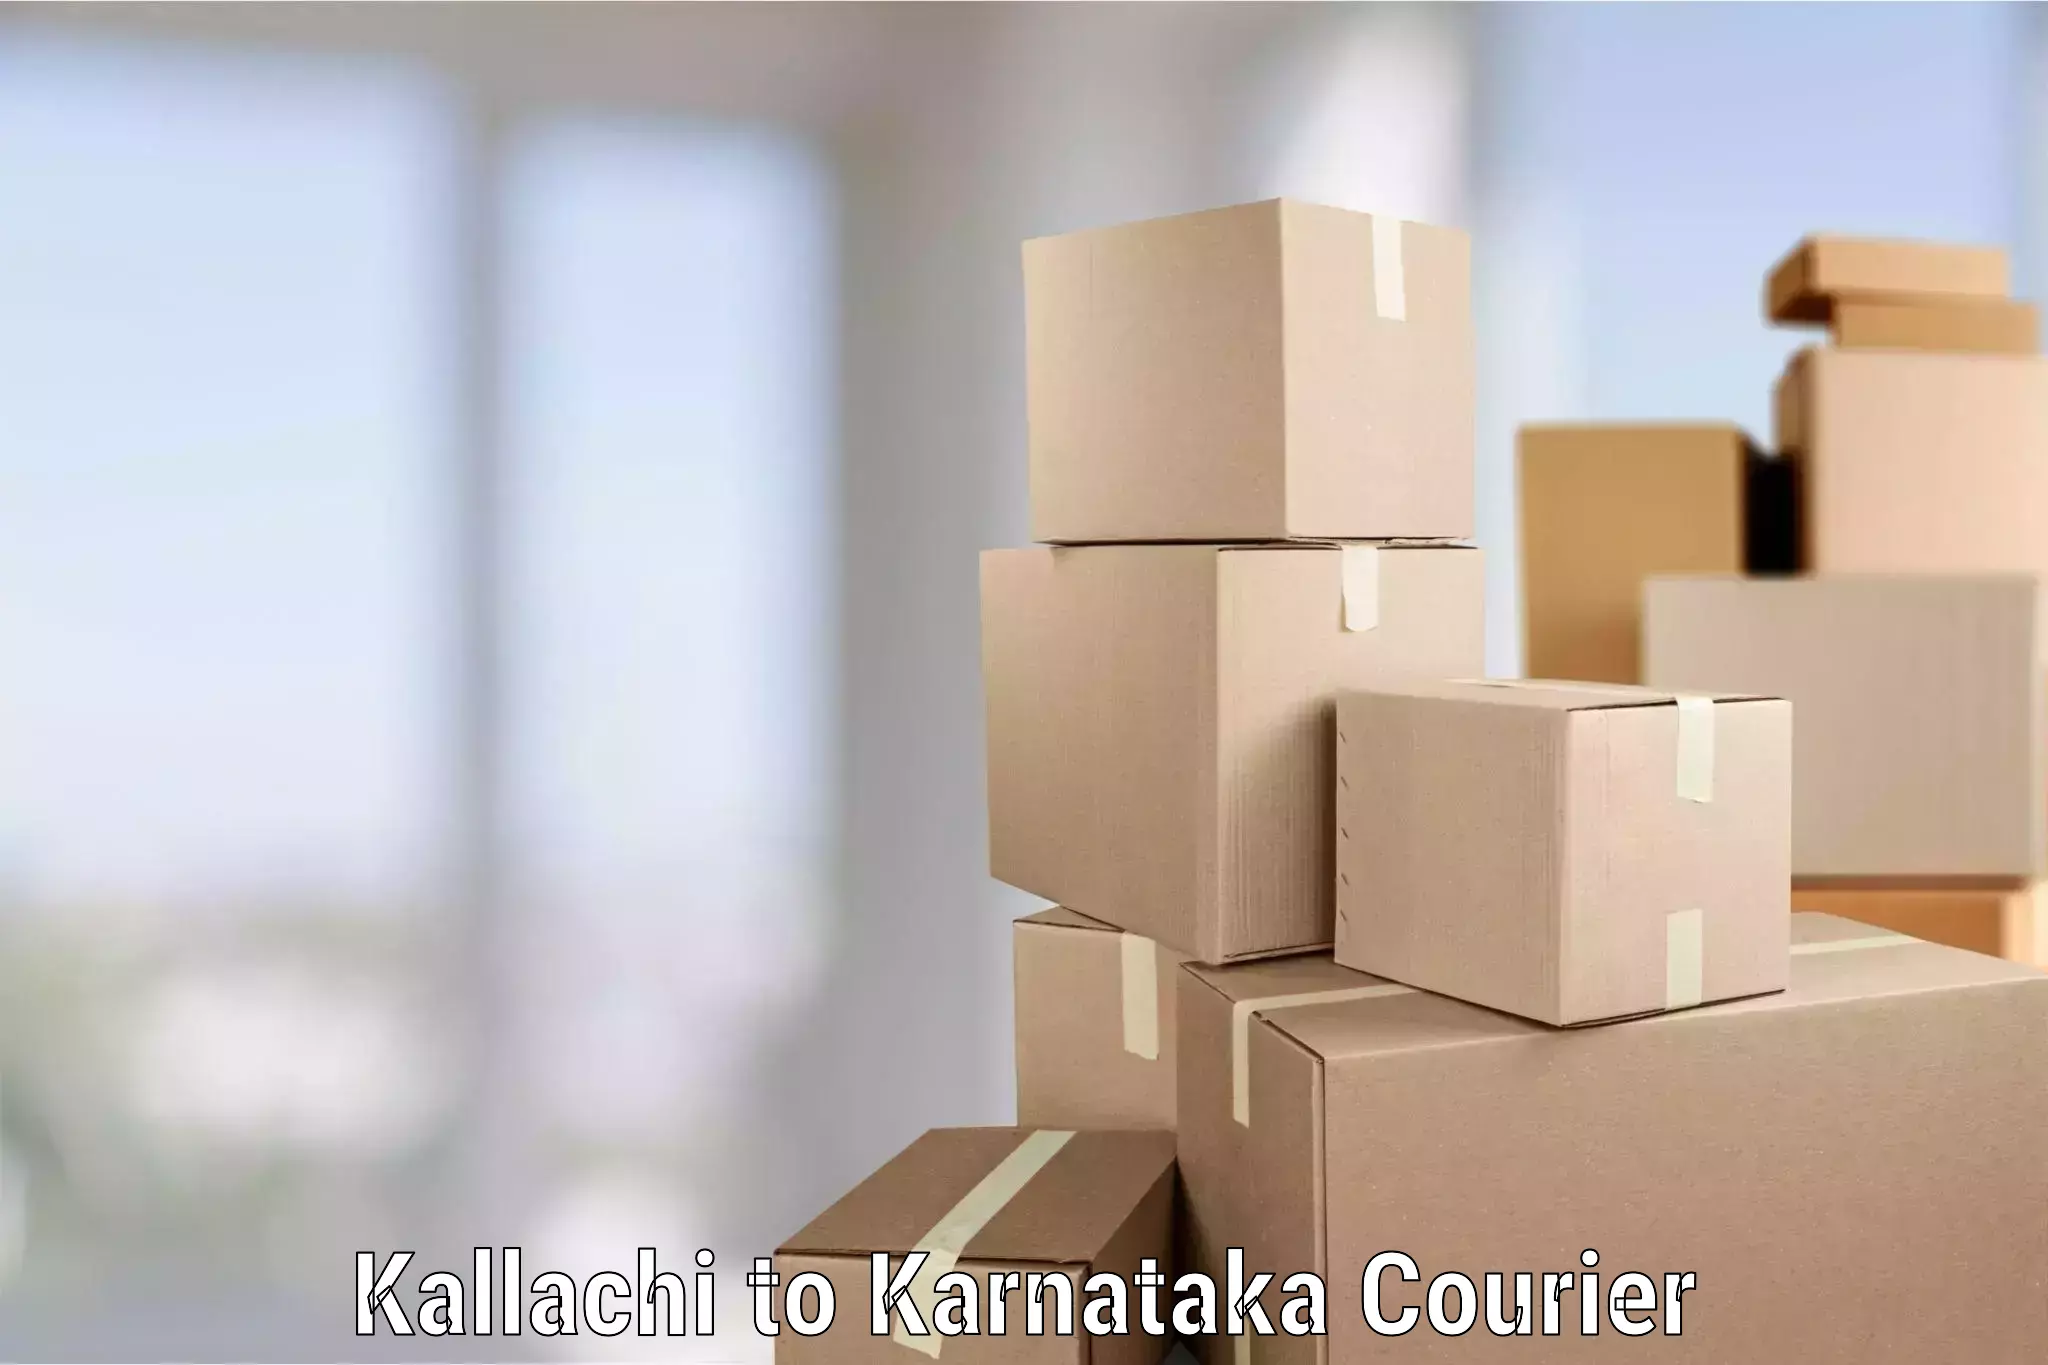 Skilled furniture transporters Kallachi to Karnataka